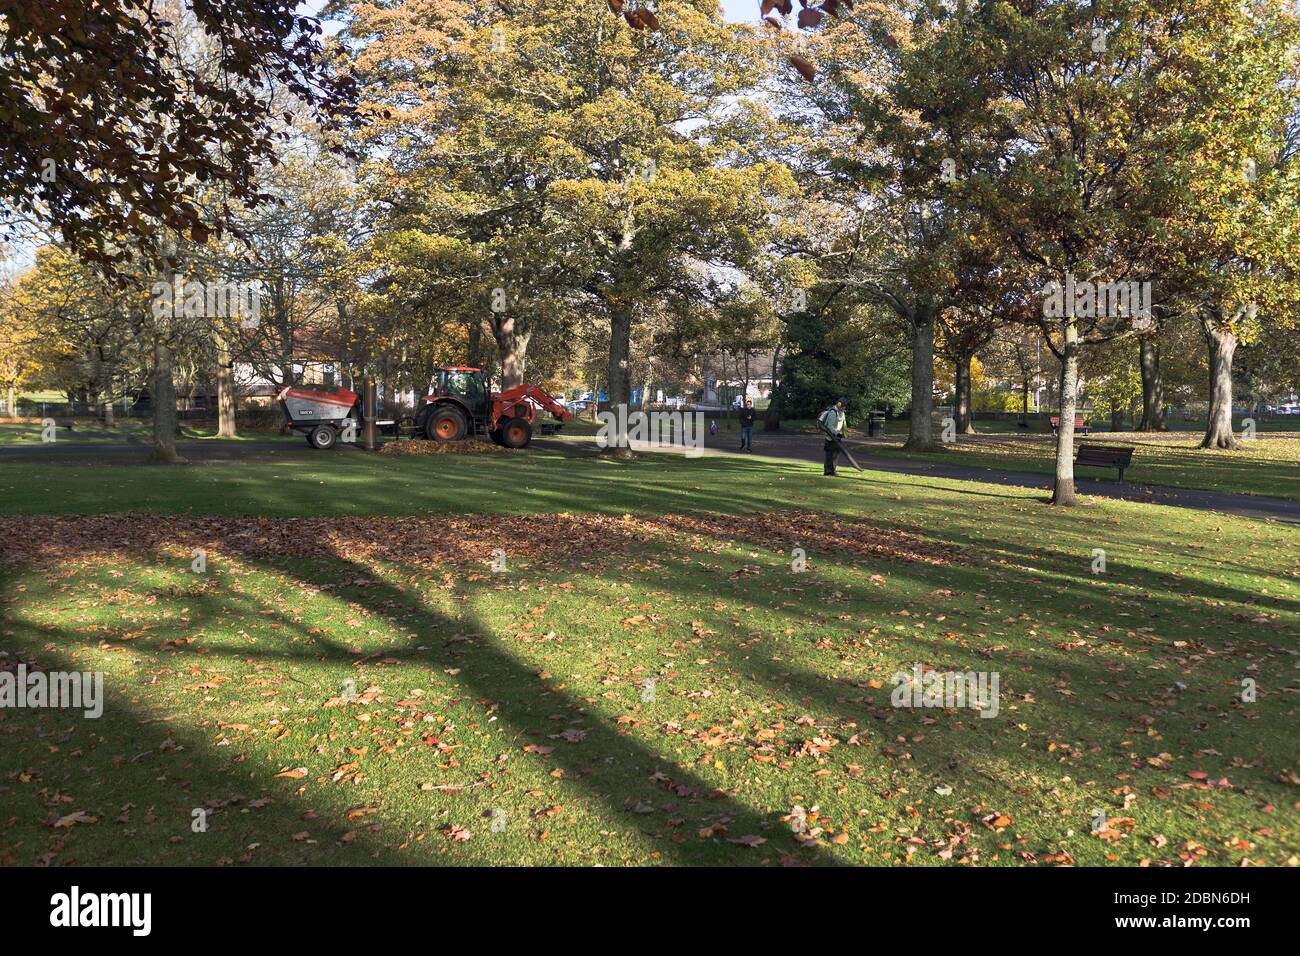 dh VICTORIA PARK ABERDEEN Rat Männer sammeln Herbstblätter in Parkland mit Traktor Blatt Sauger Ausrüstung Herbstfarben schottland Parks Stockfoto